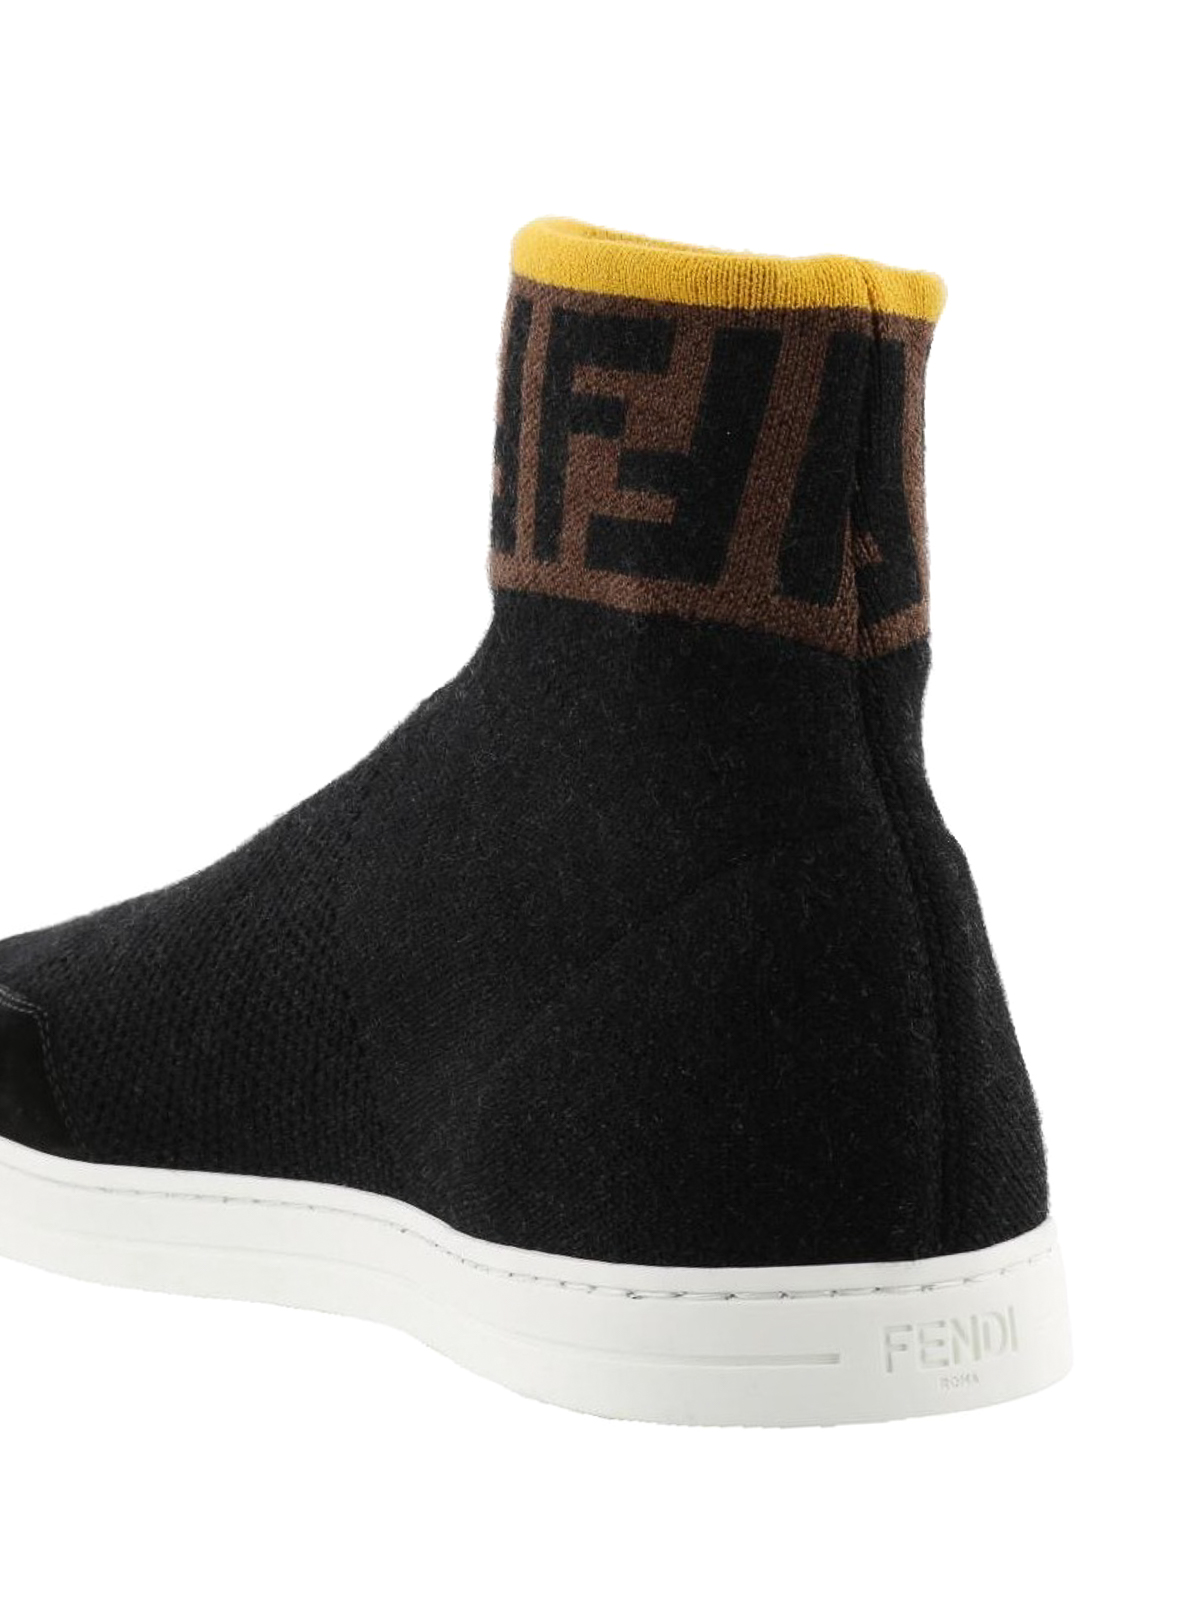 Fendi - Black knit wool sock sneakers 